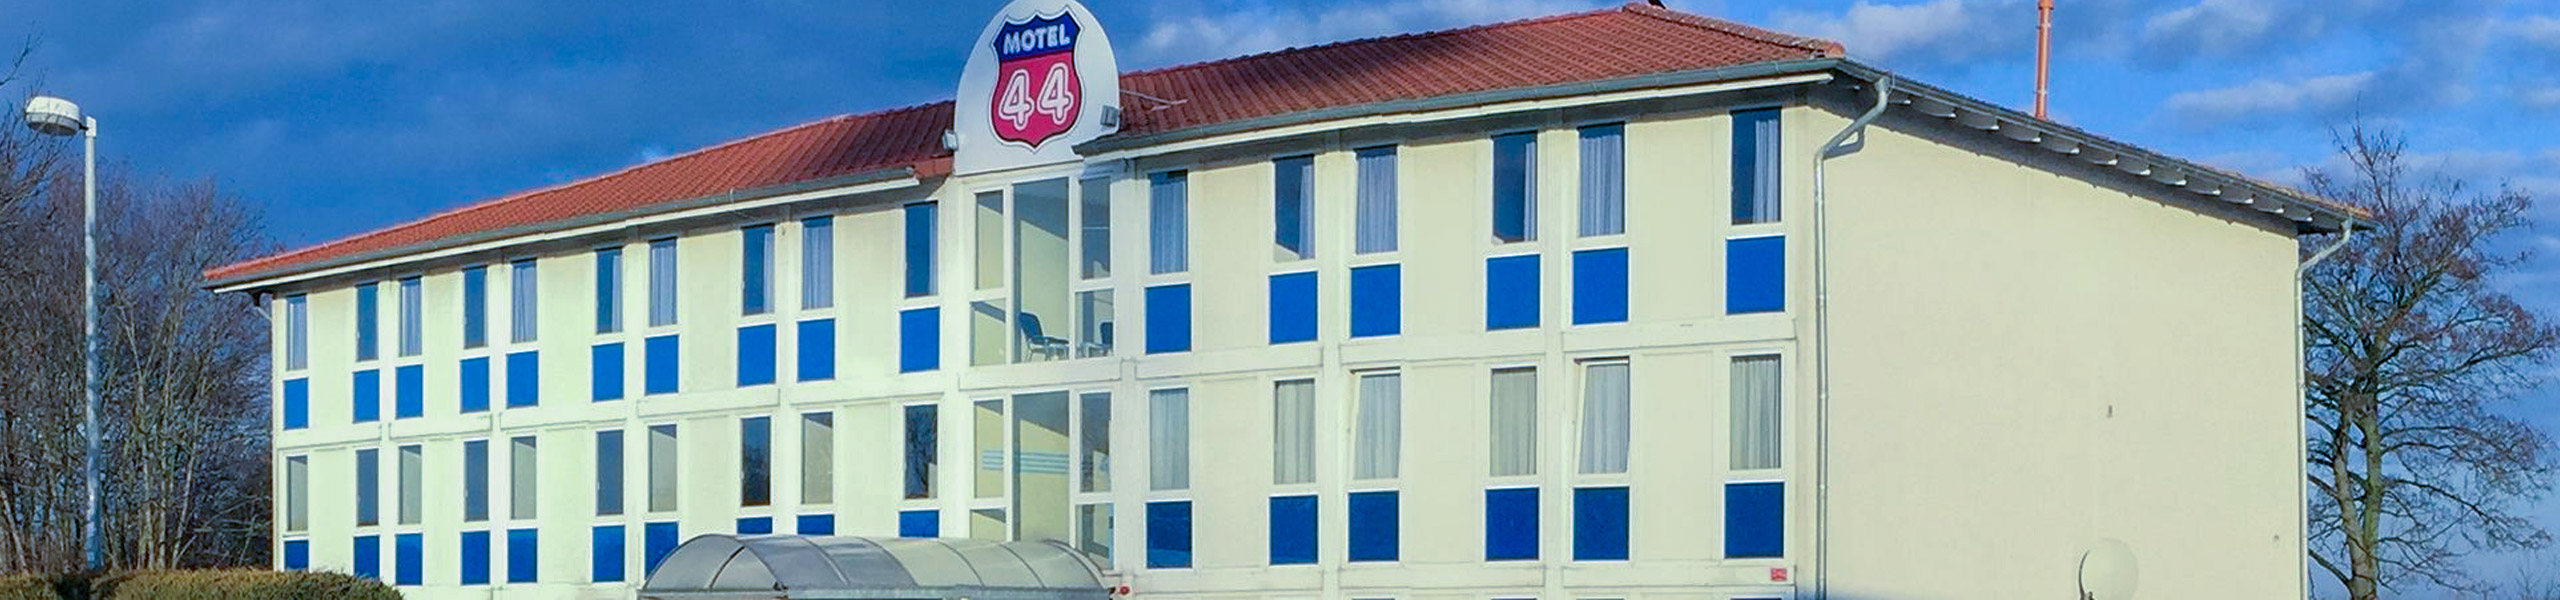 (c) Motel44.de